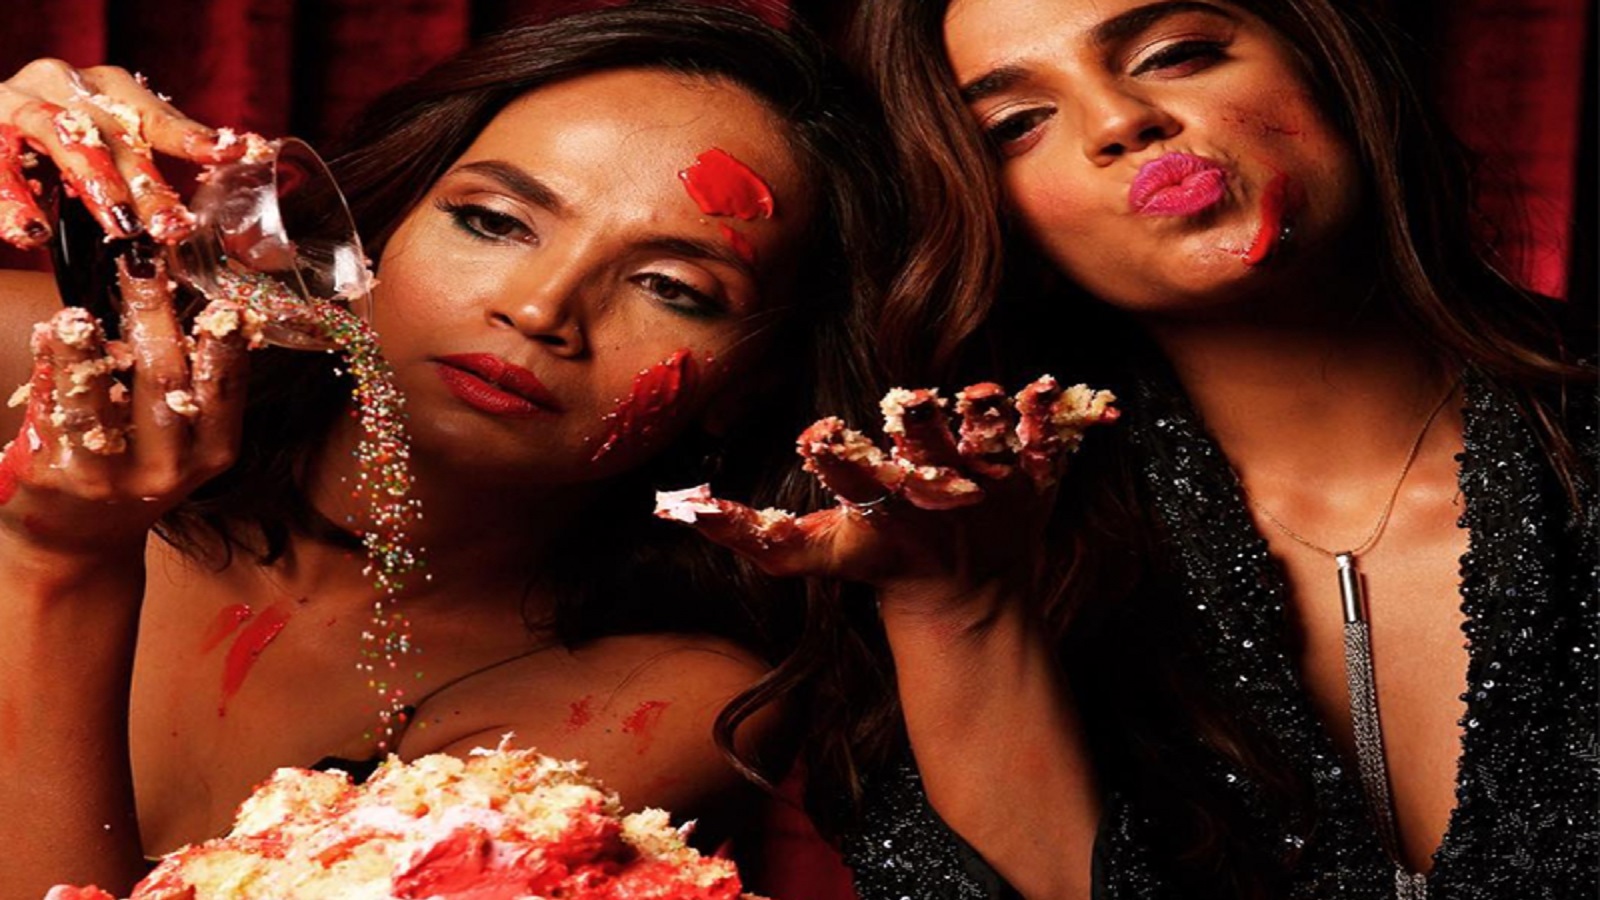 "كعكة": سينما باكستانية للتطهر من الذنب